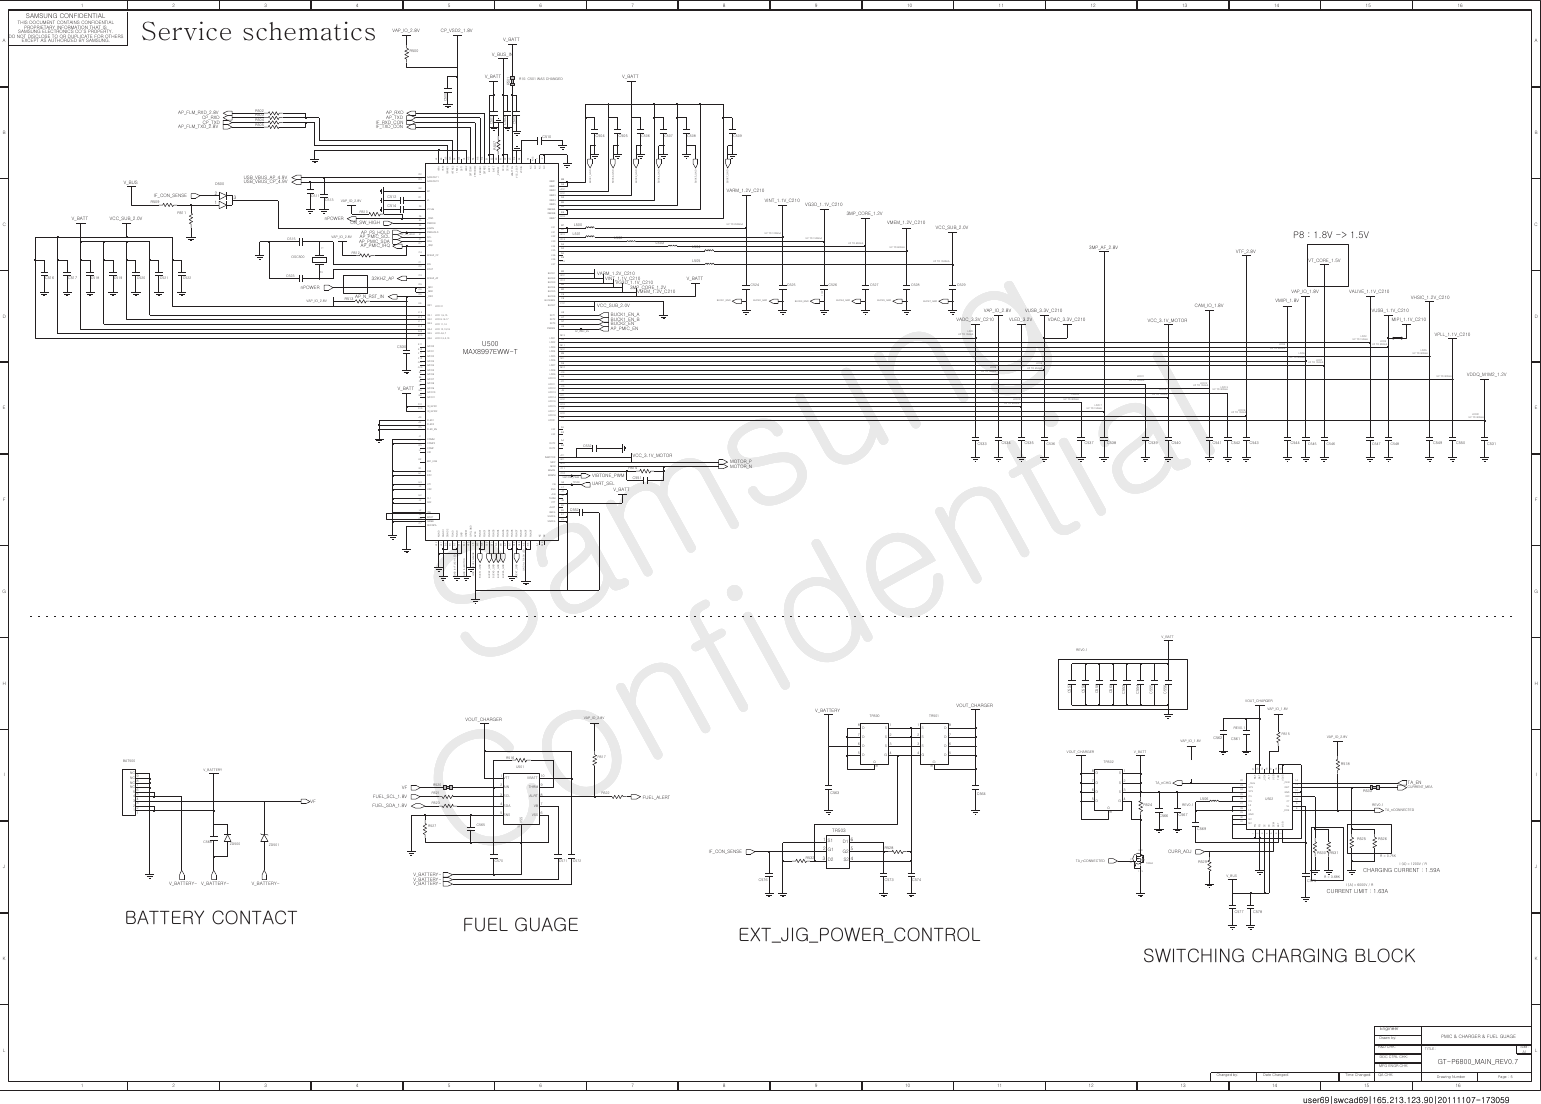 Page 5 of 12 - Samsung GT-P6800 - Schematics. Www.s-manuals.com. Service Schematics